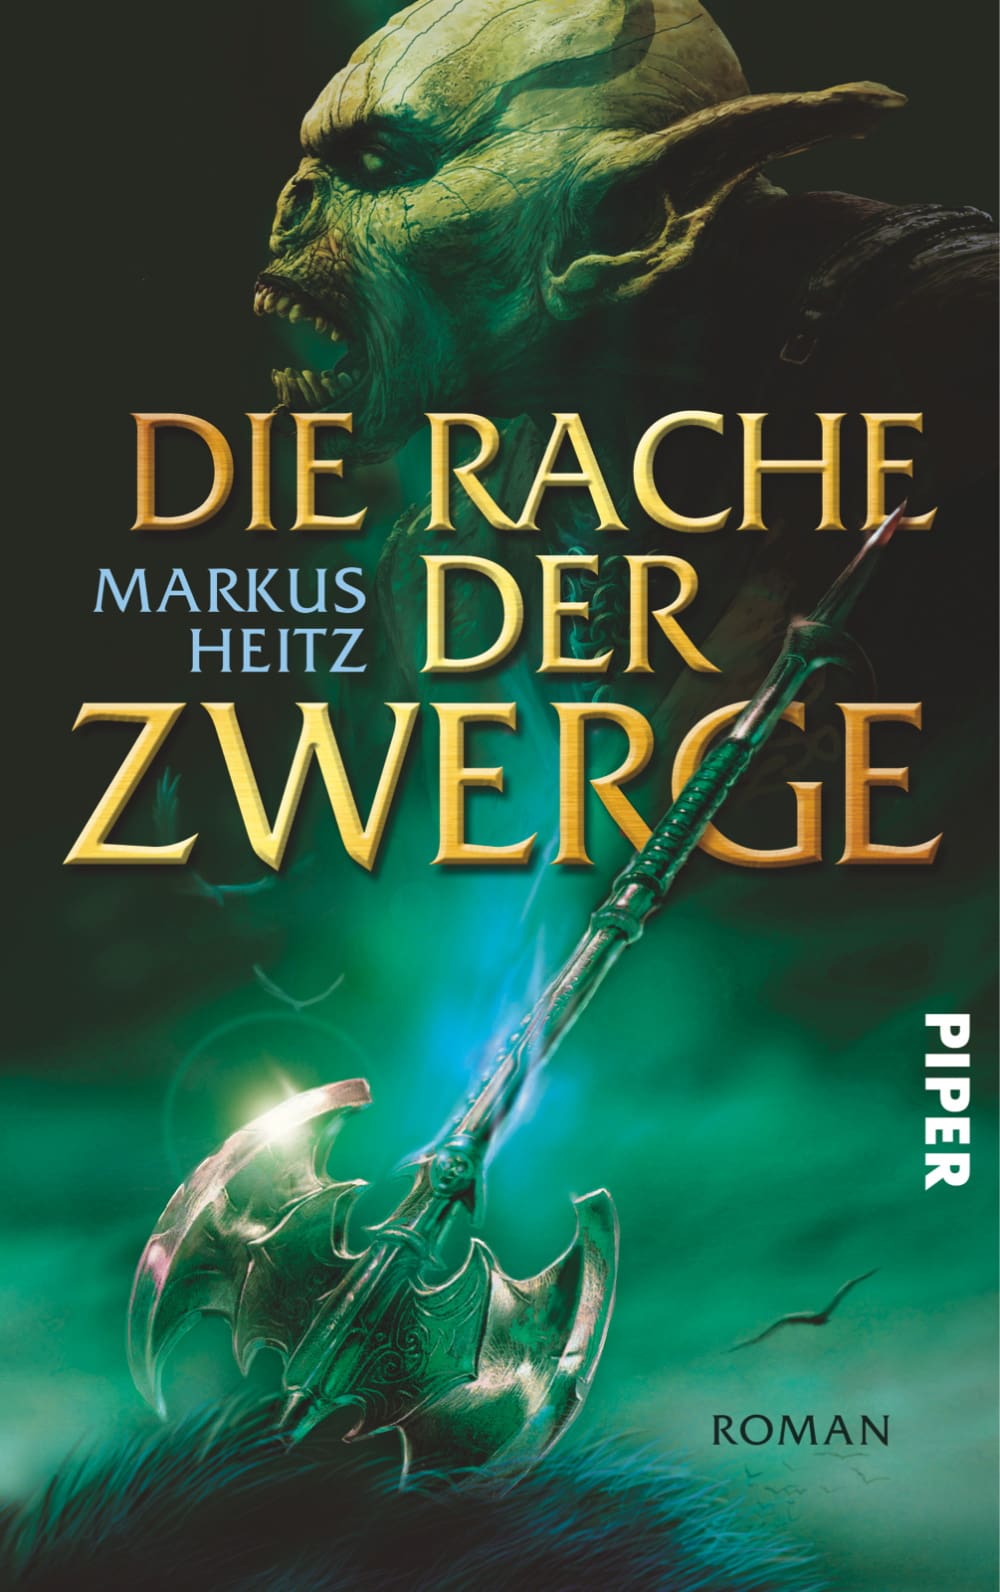 Cover des Buches "Die Rache der Zwerge" von Markus Heitz